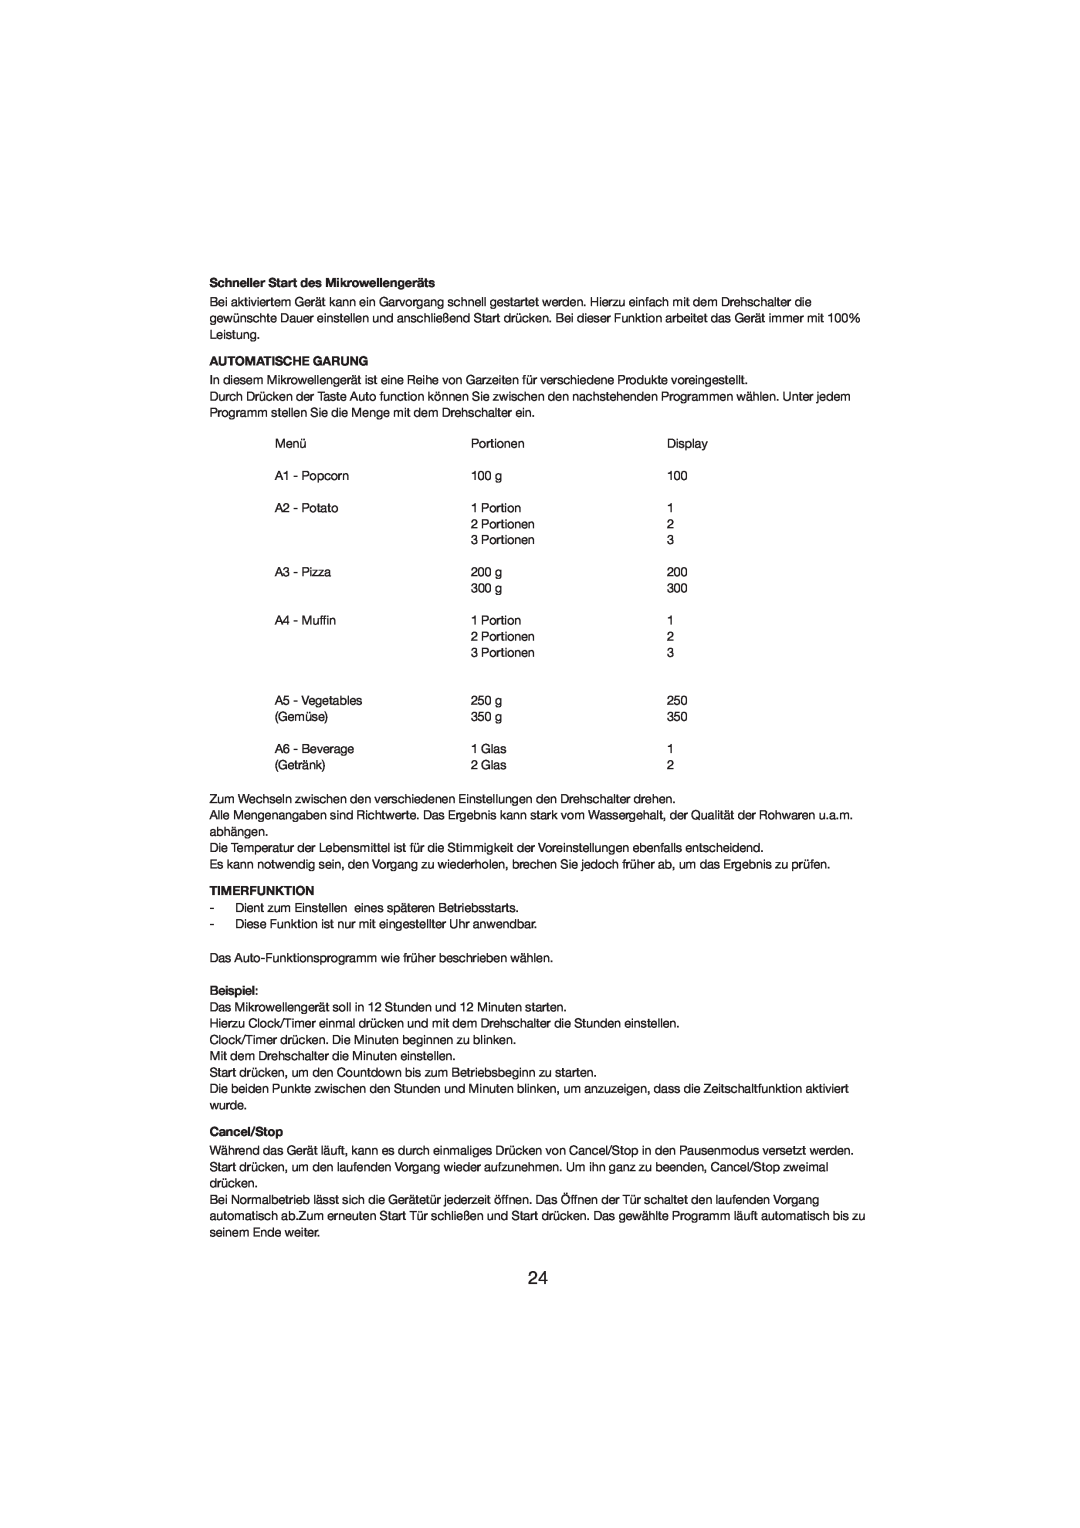 Melissa 253-001 manual Schneller Start des Mikrowellengeräts, Automatische Garung, Cancel/Stop, Timerfunktion 